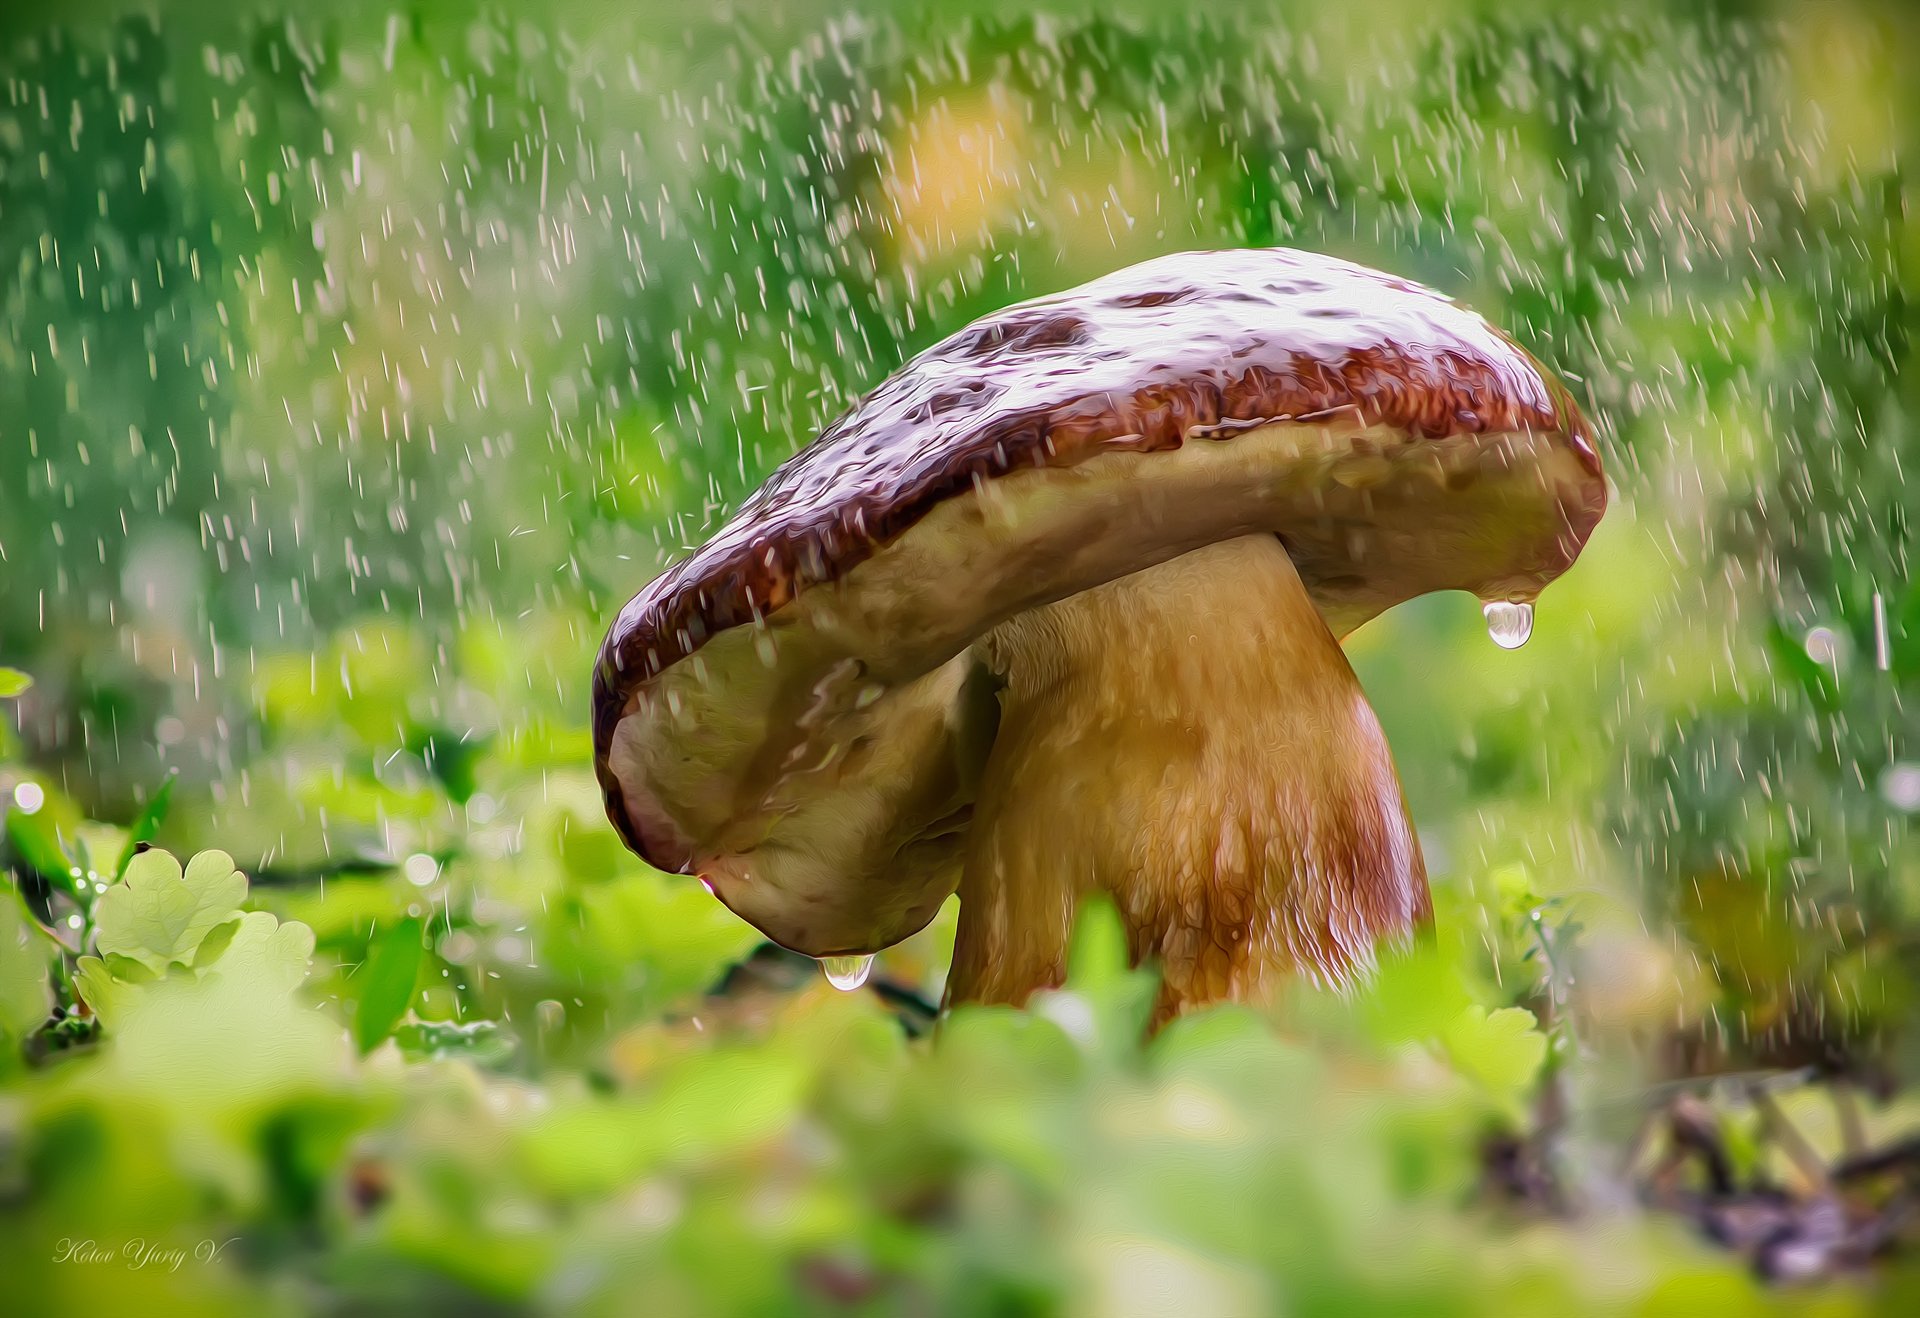 гриб,дождь,вода, свет, трава, Юрий Котов